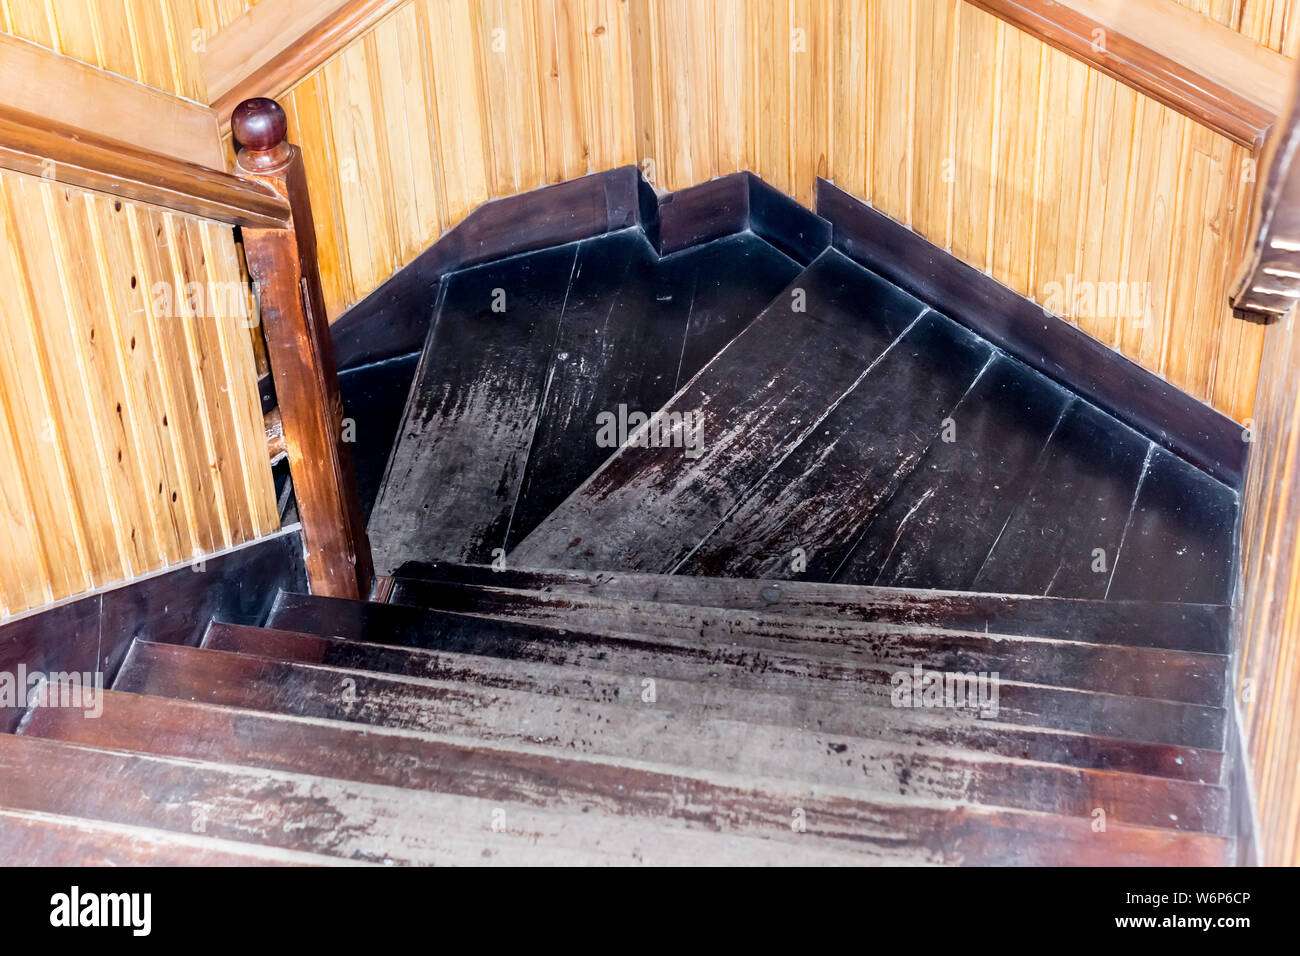 Escalera de peldaños y pasamanos de madera. Diseño en espiral de material de madera escaleras de madera interior pasos. Edificio de oficinas o insi Fotografía de stock -